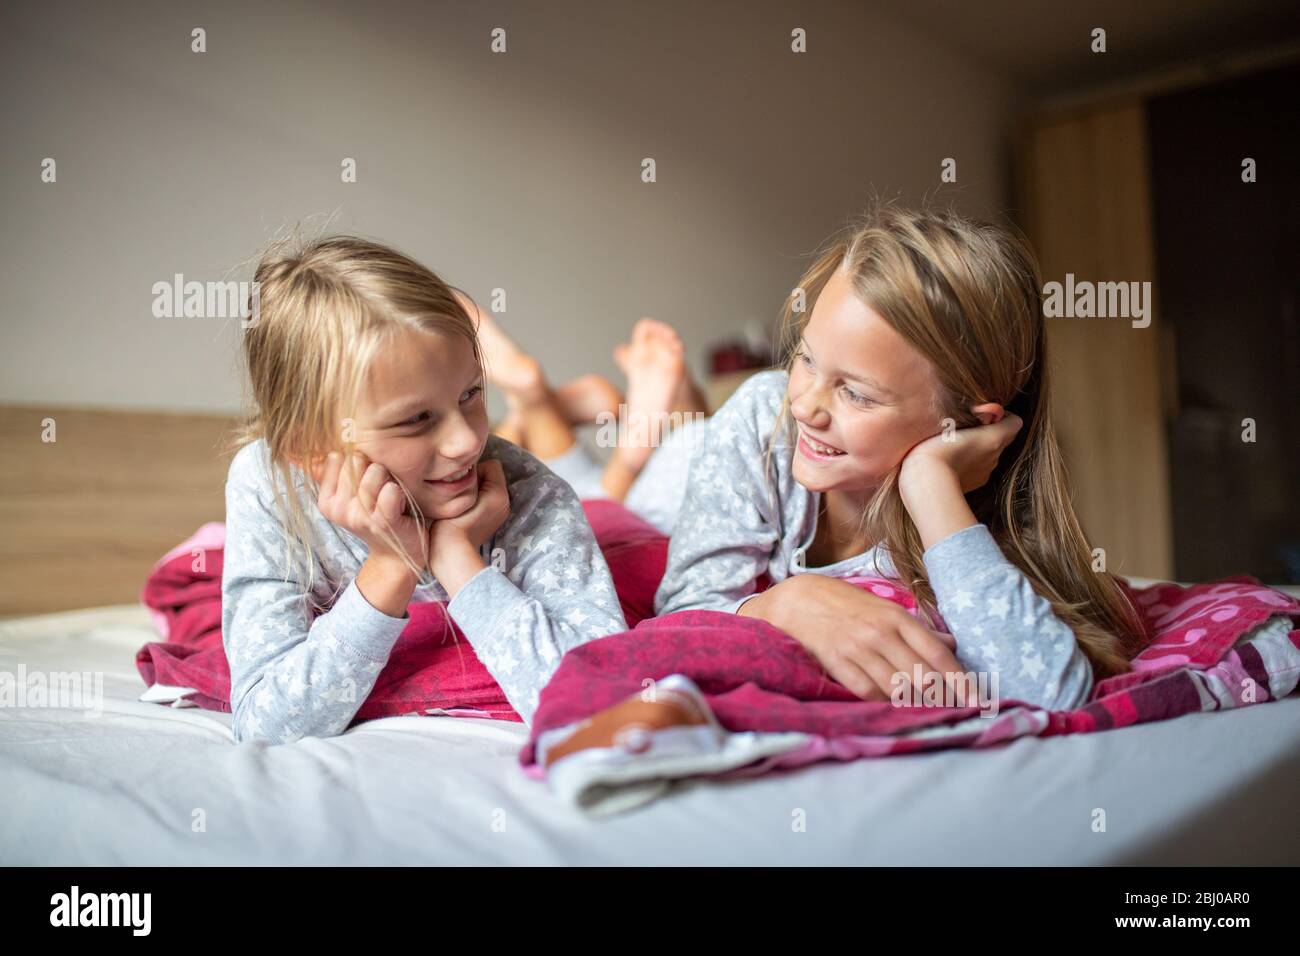 Deux filles se coutant sur le lit et souriant l'une à l'autre Banque D'Images